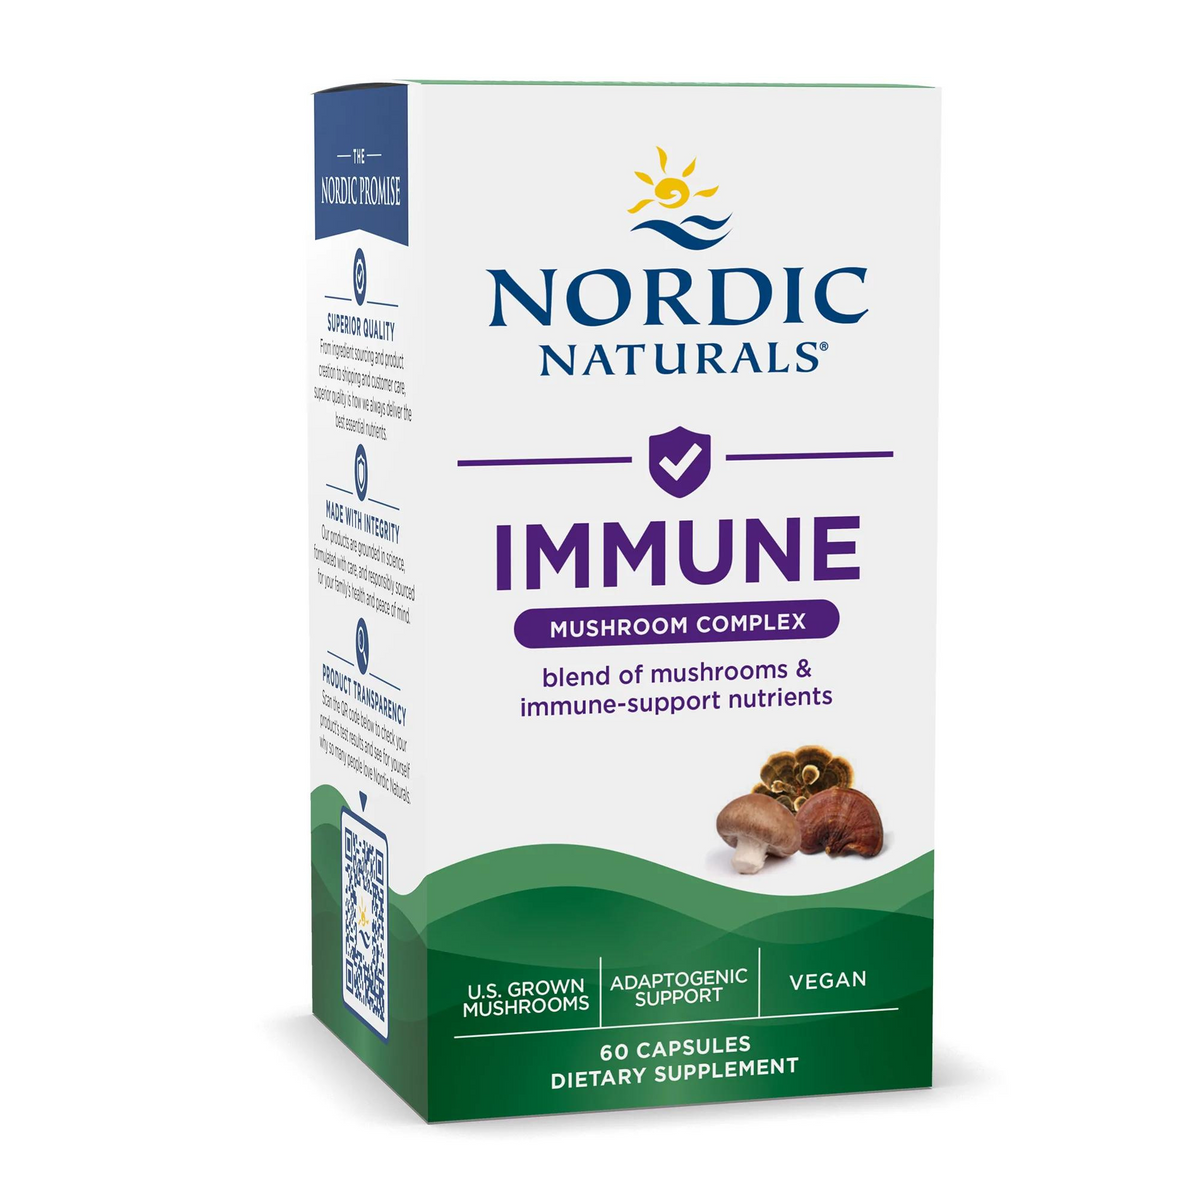 Primary Image of Nordic Naturals Immune Mushroom Complex Capsules (60 count)